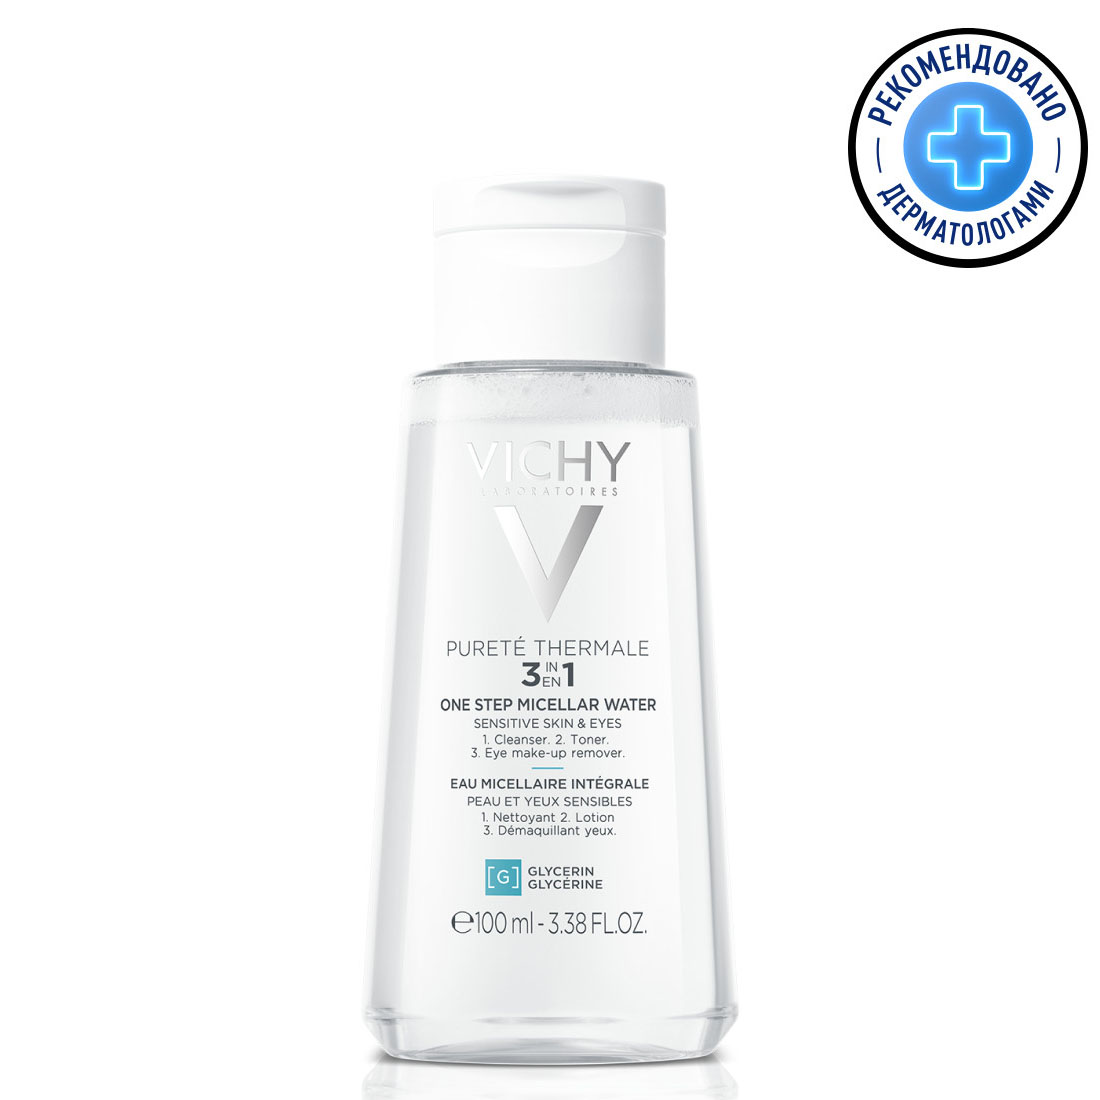 Vichy Мицеллярная вода универсальная для чувствительной кожи лица и вокруг глаз, 100 мл (Vichy, Purete Thermal)